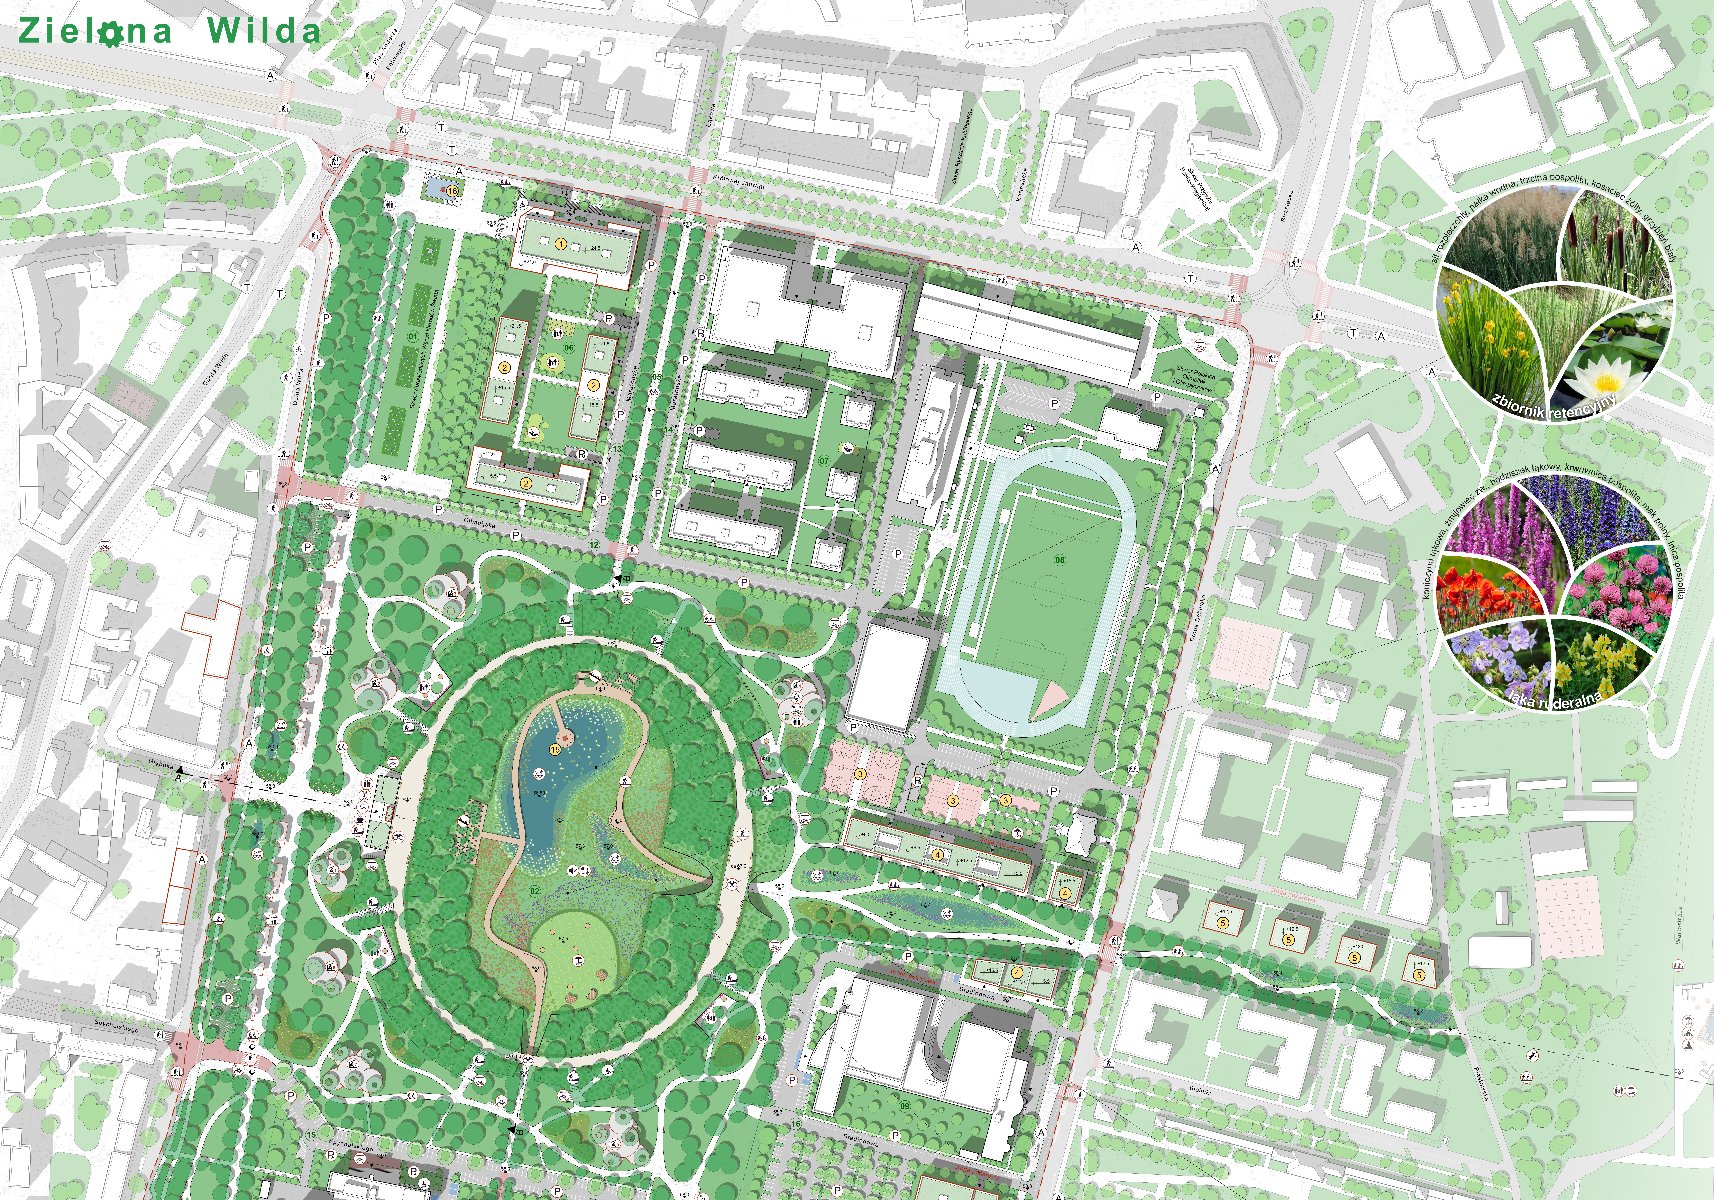 Plansza w odcieniach zieleni przedstawiająca stadion Szyca, teren AWF i teren przy ul. Królowej Jadwigii.